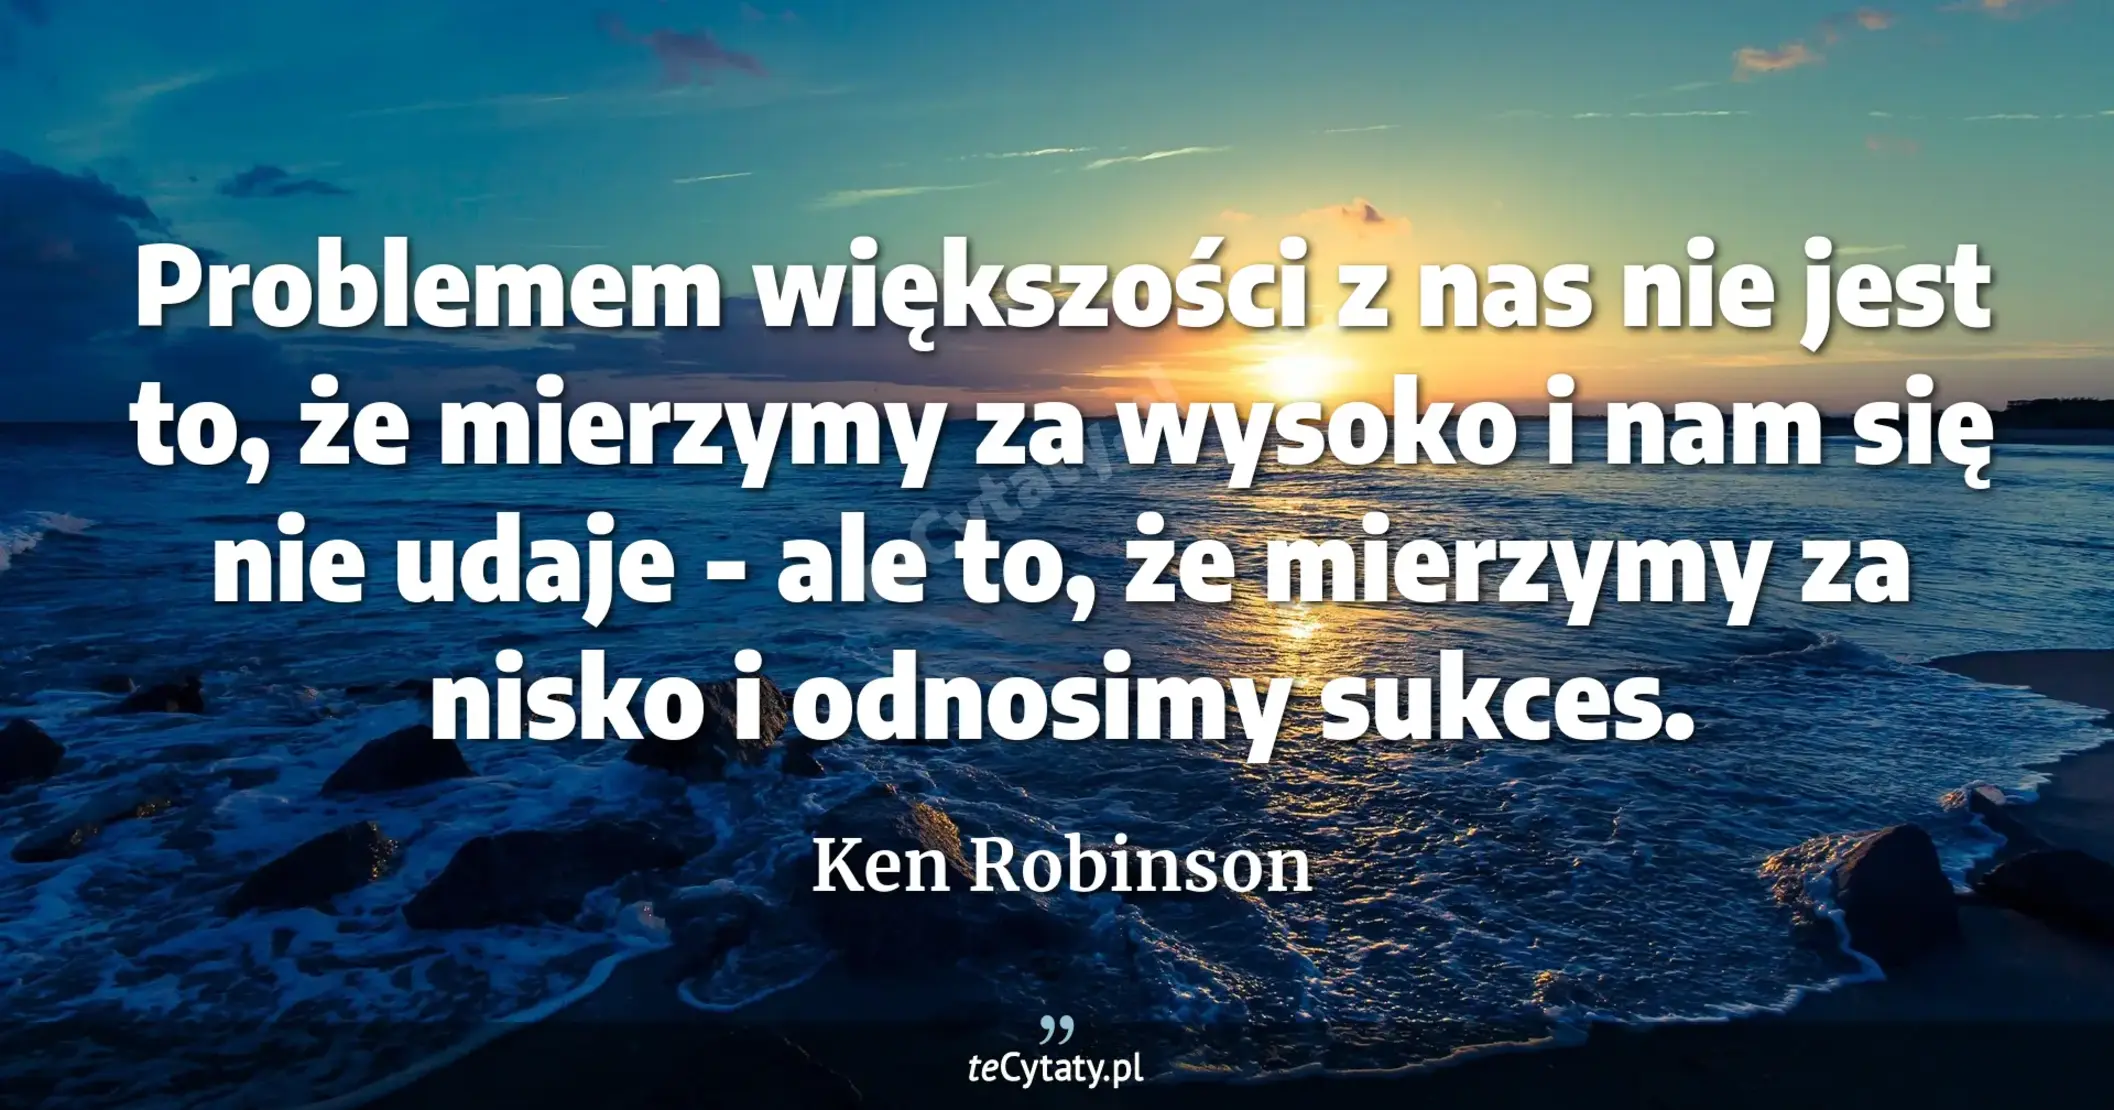 Problemem większości z nas nie jest to, że mierzymy za wysoko i nam się nie udaje - ale to, że mierzymy za nisko i odnosimy sukces. - Ken Robinson